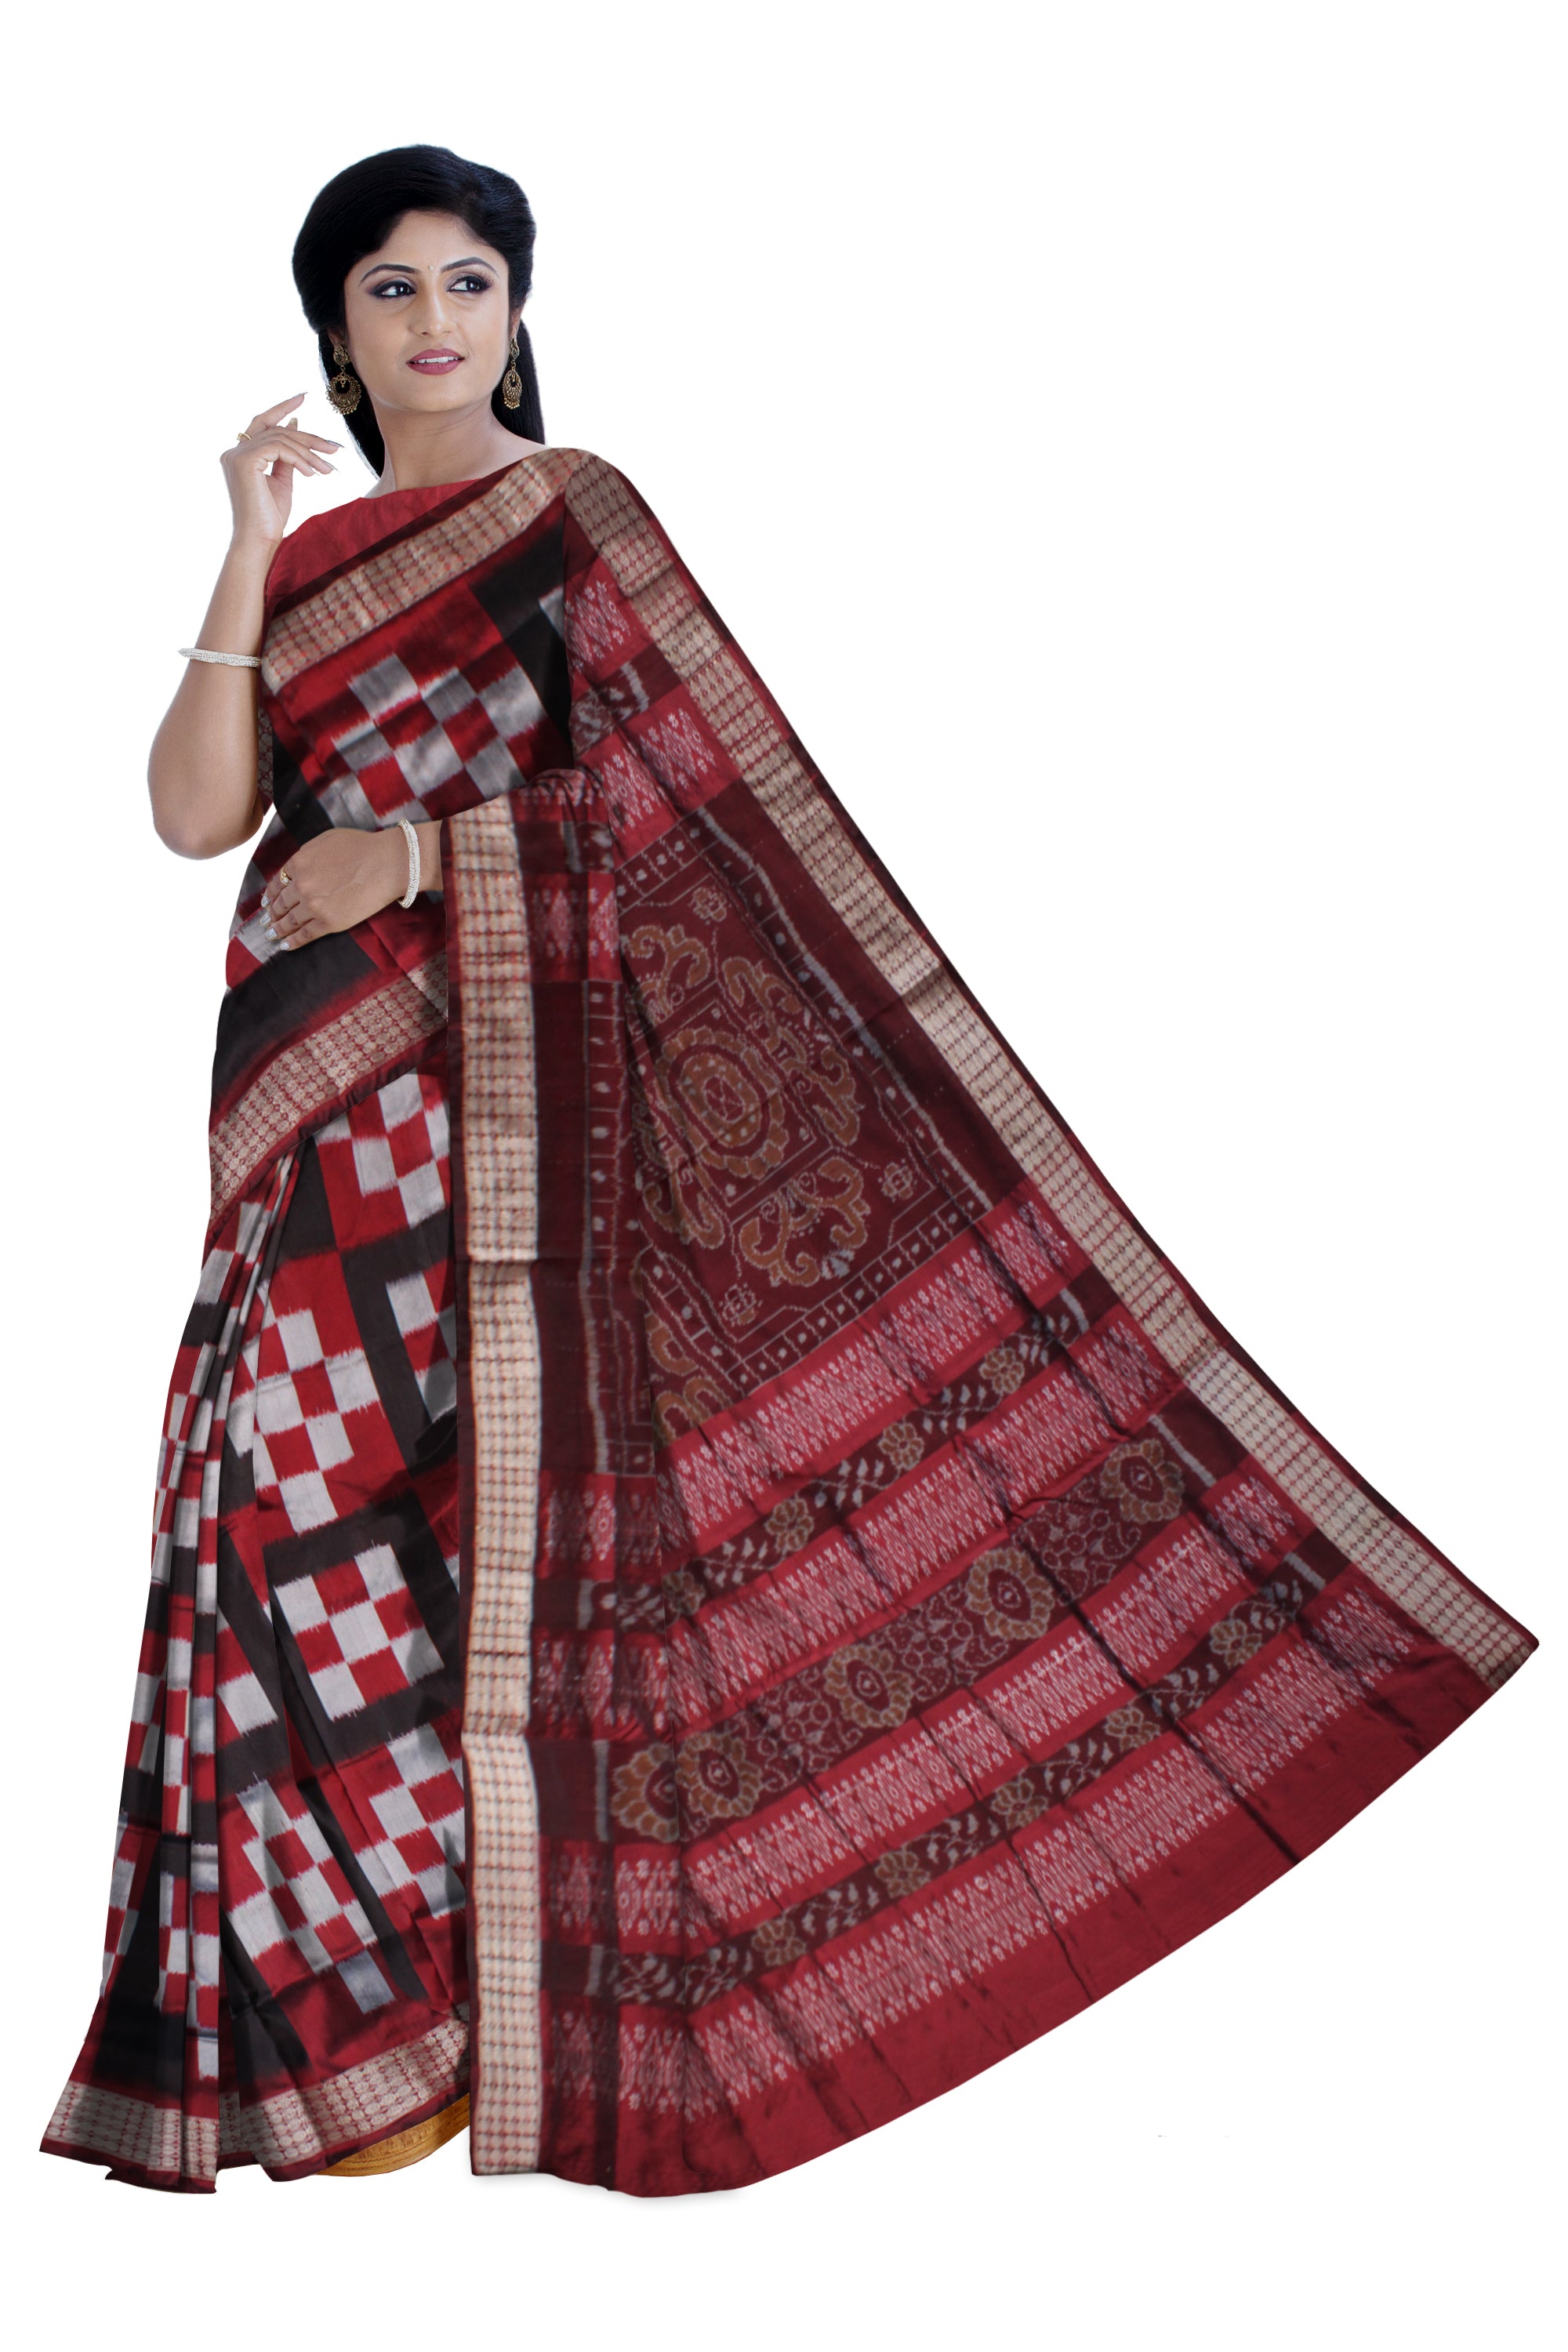 Whole body pasapali pattern pata saree. - Koshali Arts & Crafts Enterprise